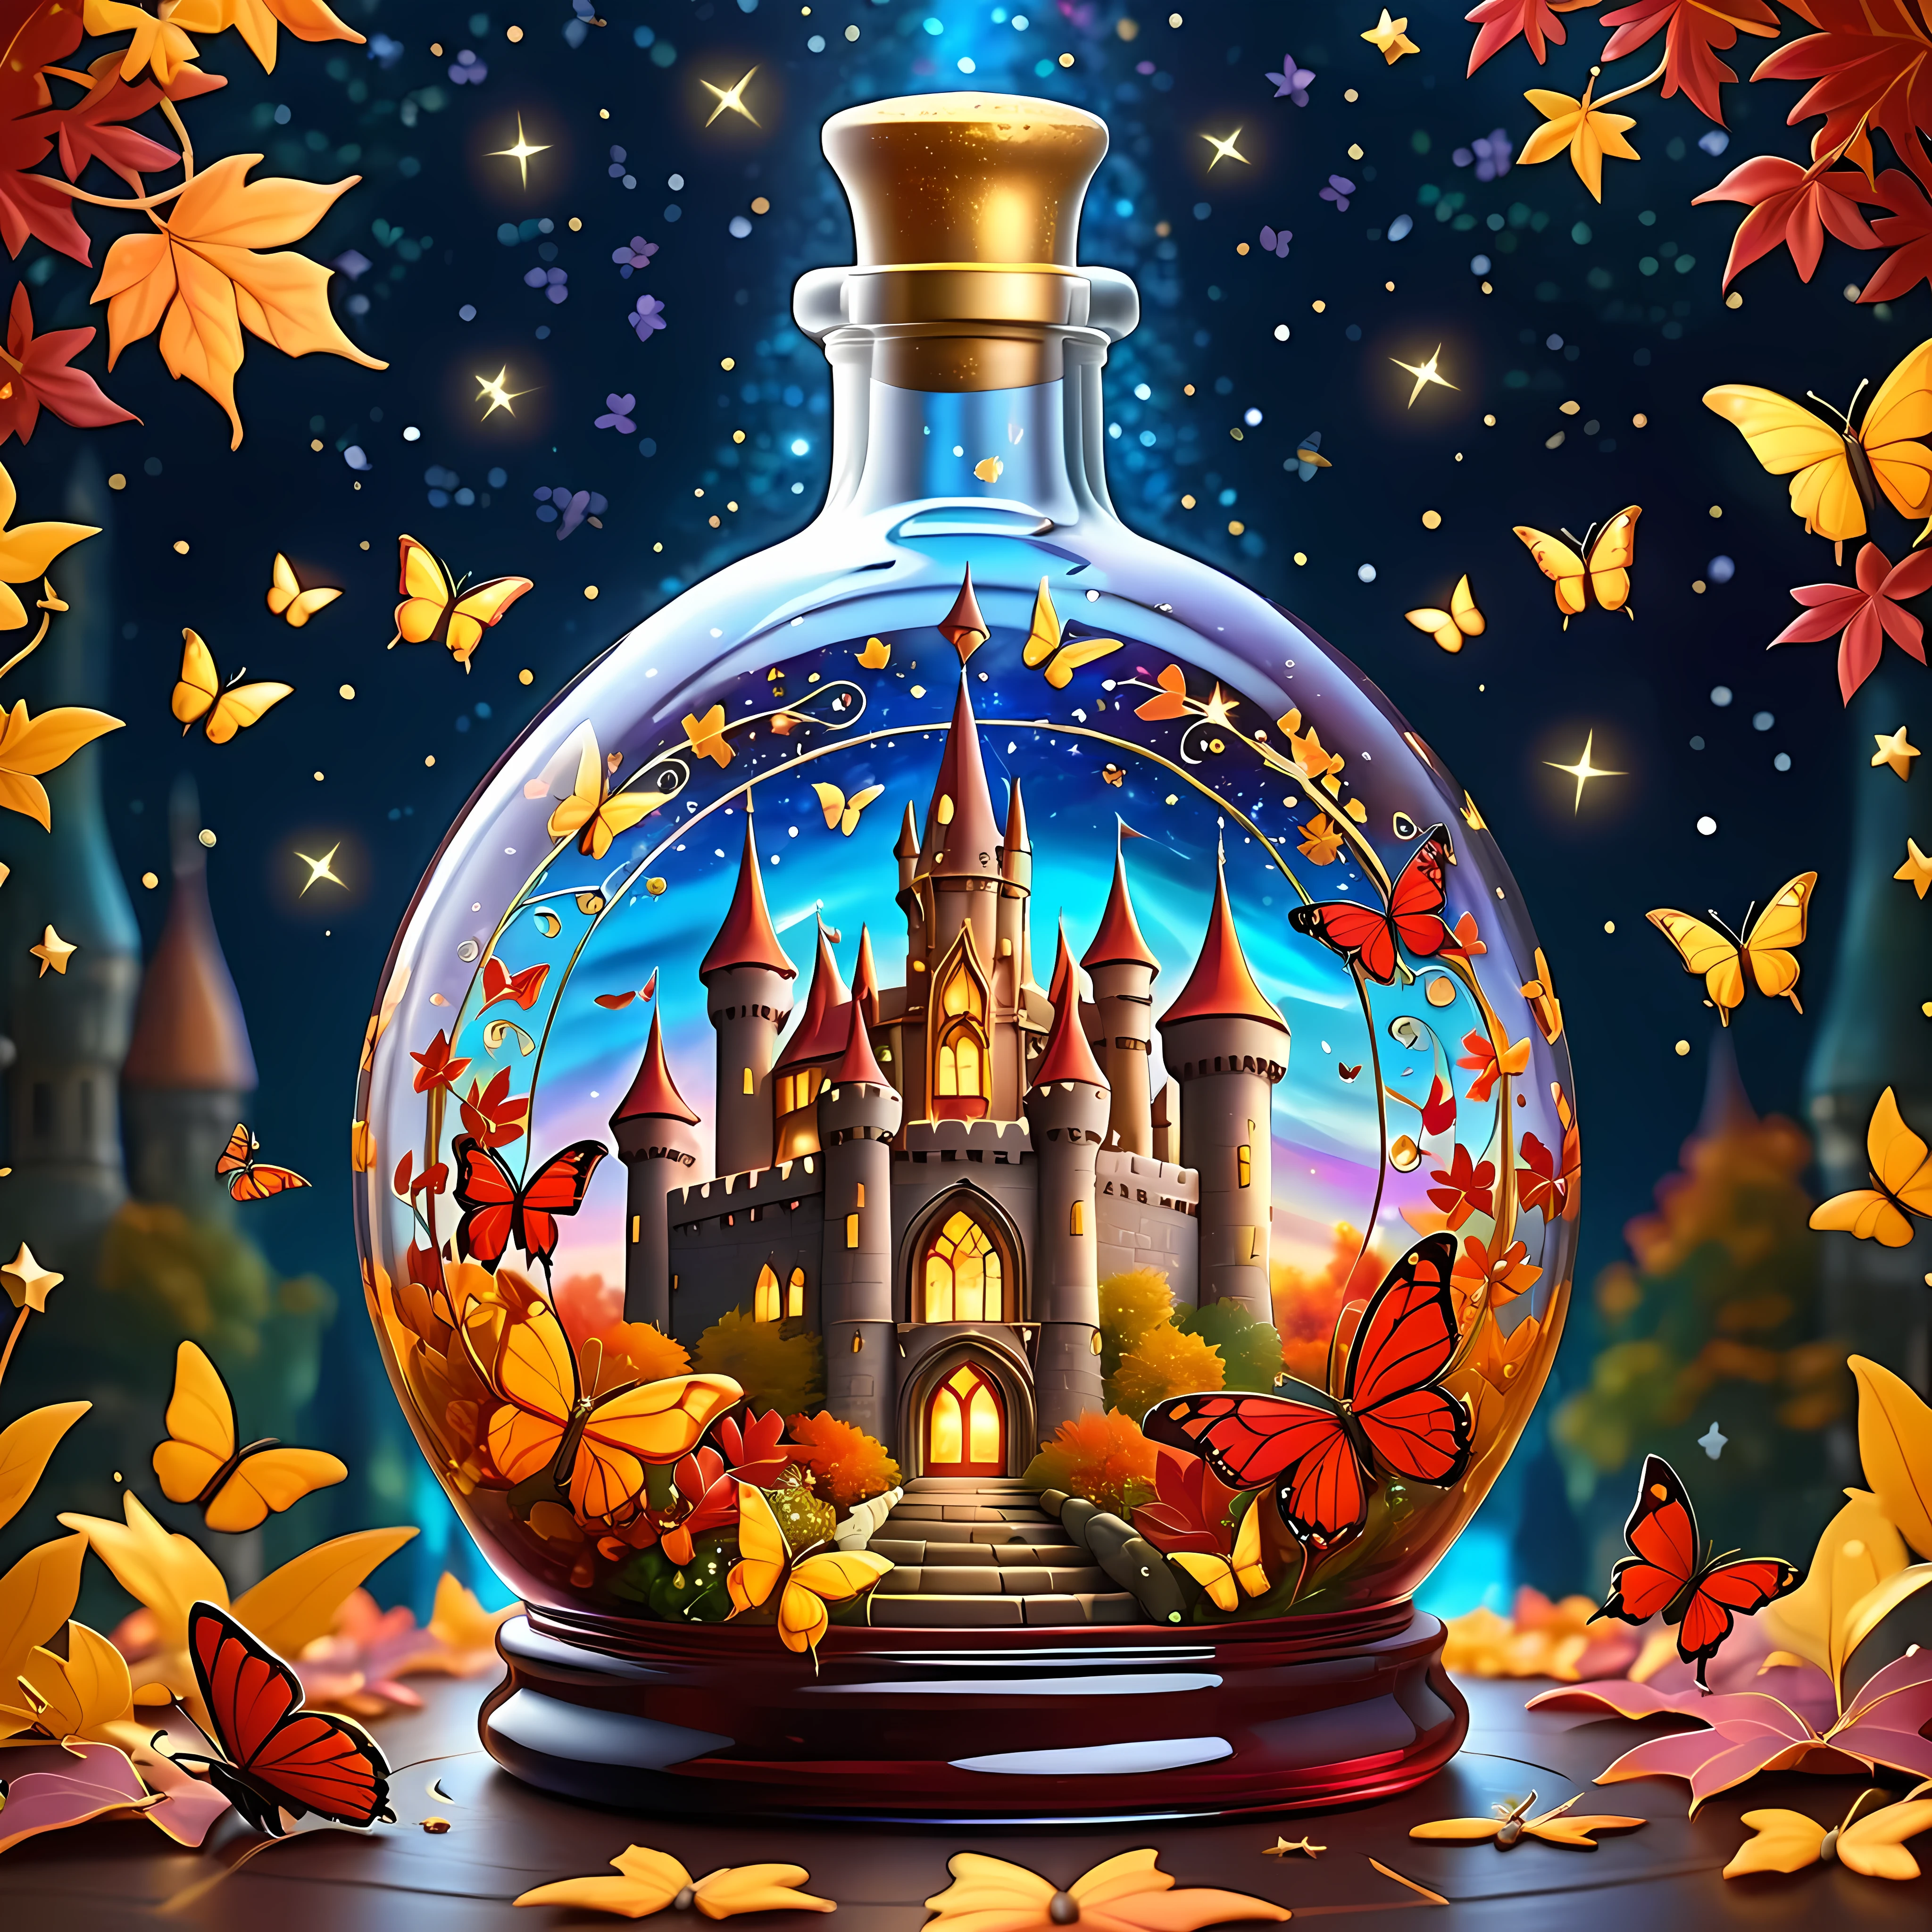 明るい漫画, 魔法の秋の活気に満ちた城は、広くて華やかなガラス瓶の中に繊細に配置されています, きらめく星々と渦巻く銀河の広大な宇宙に囲まれた, 瓶の中に金色と深紅の葉, そして美しい蝶, 最大16K解像度の傑作, 素晴らしい品質